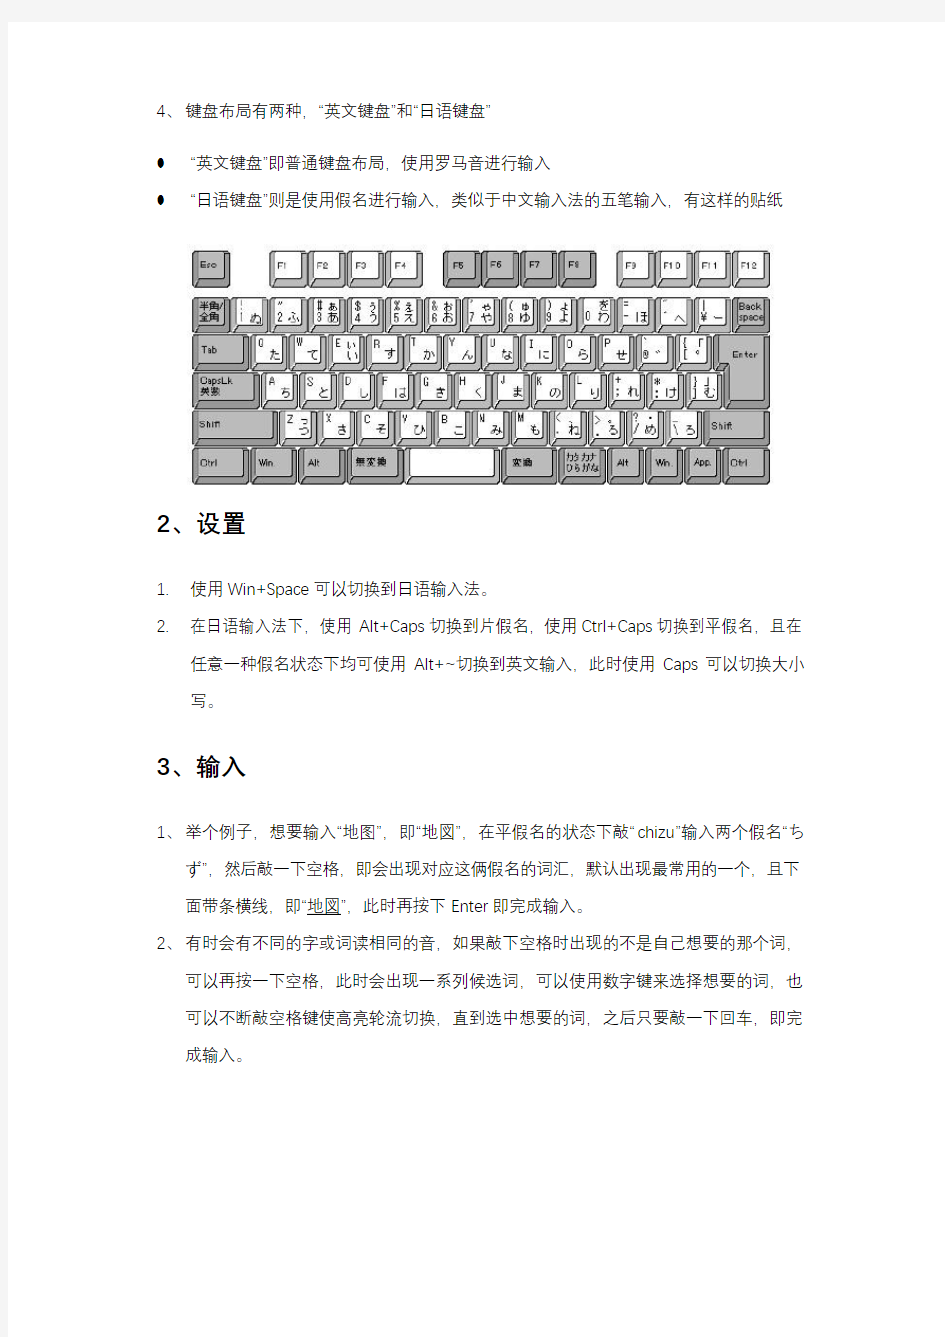 微软日语输入法安装与使用